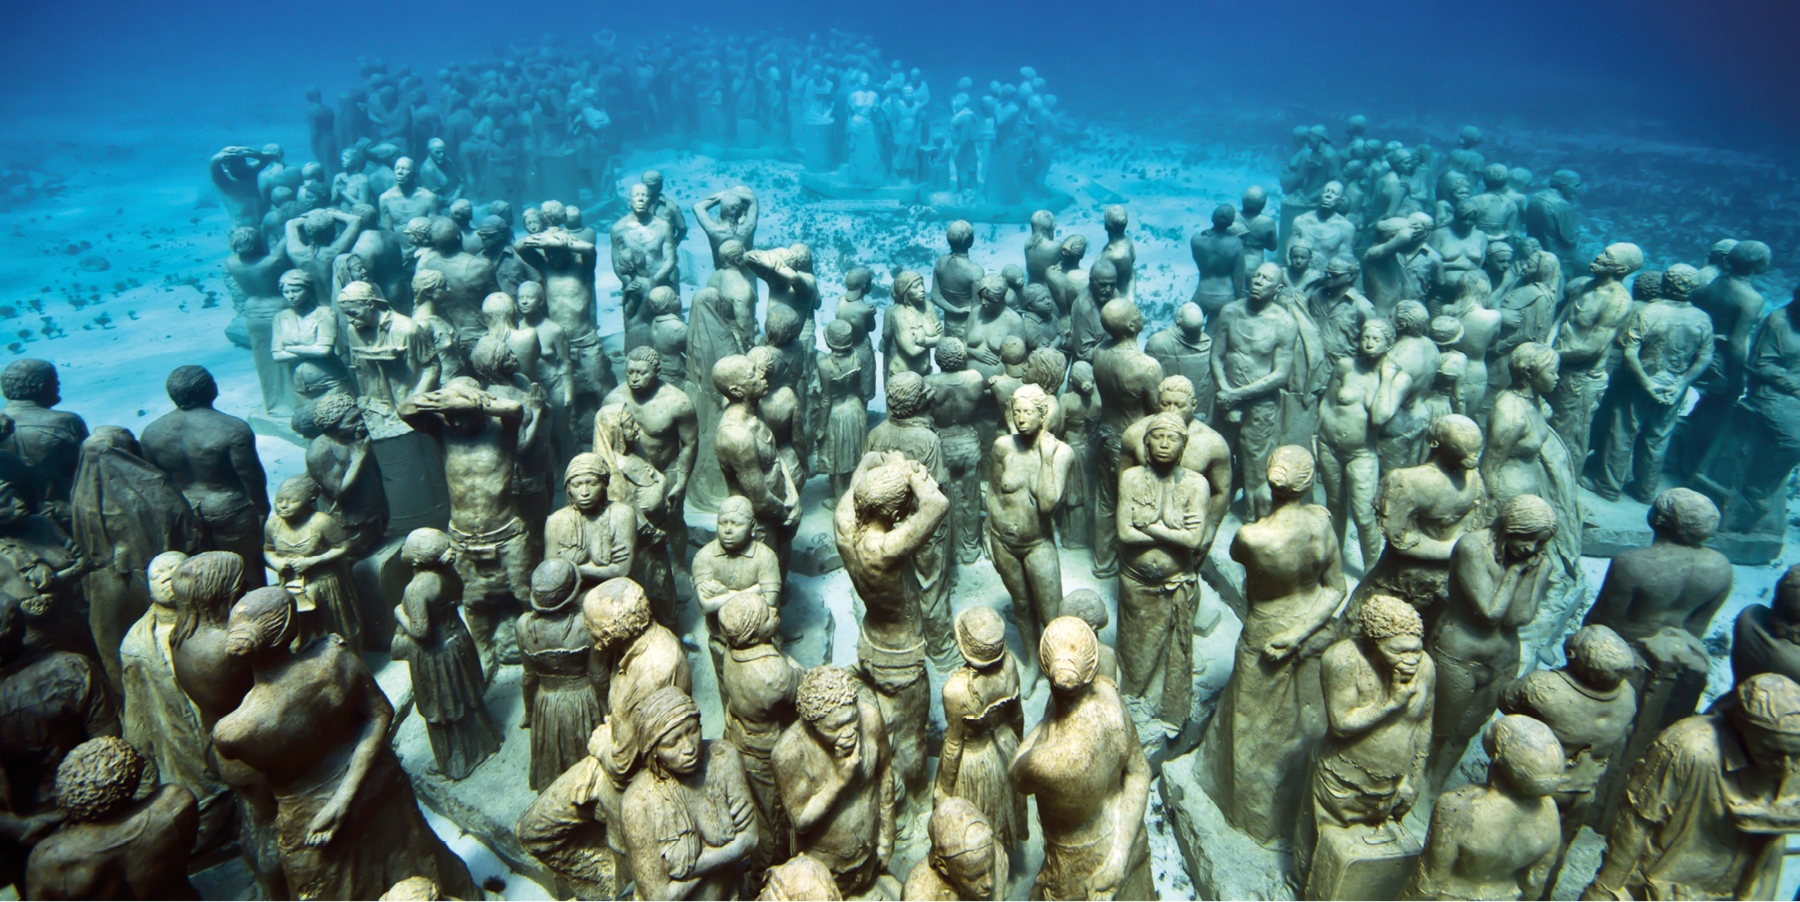 Fotografia. Diversas esculturas de pessoas dispostas em um leito arenoso no fundo do mar, de águas azuladas e transparentes, compondo uma multidão.